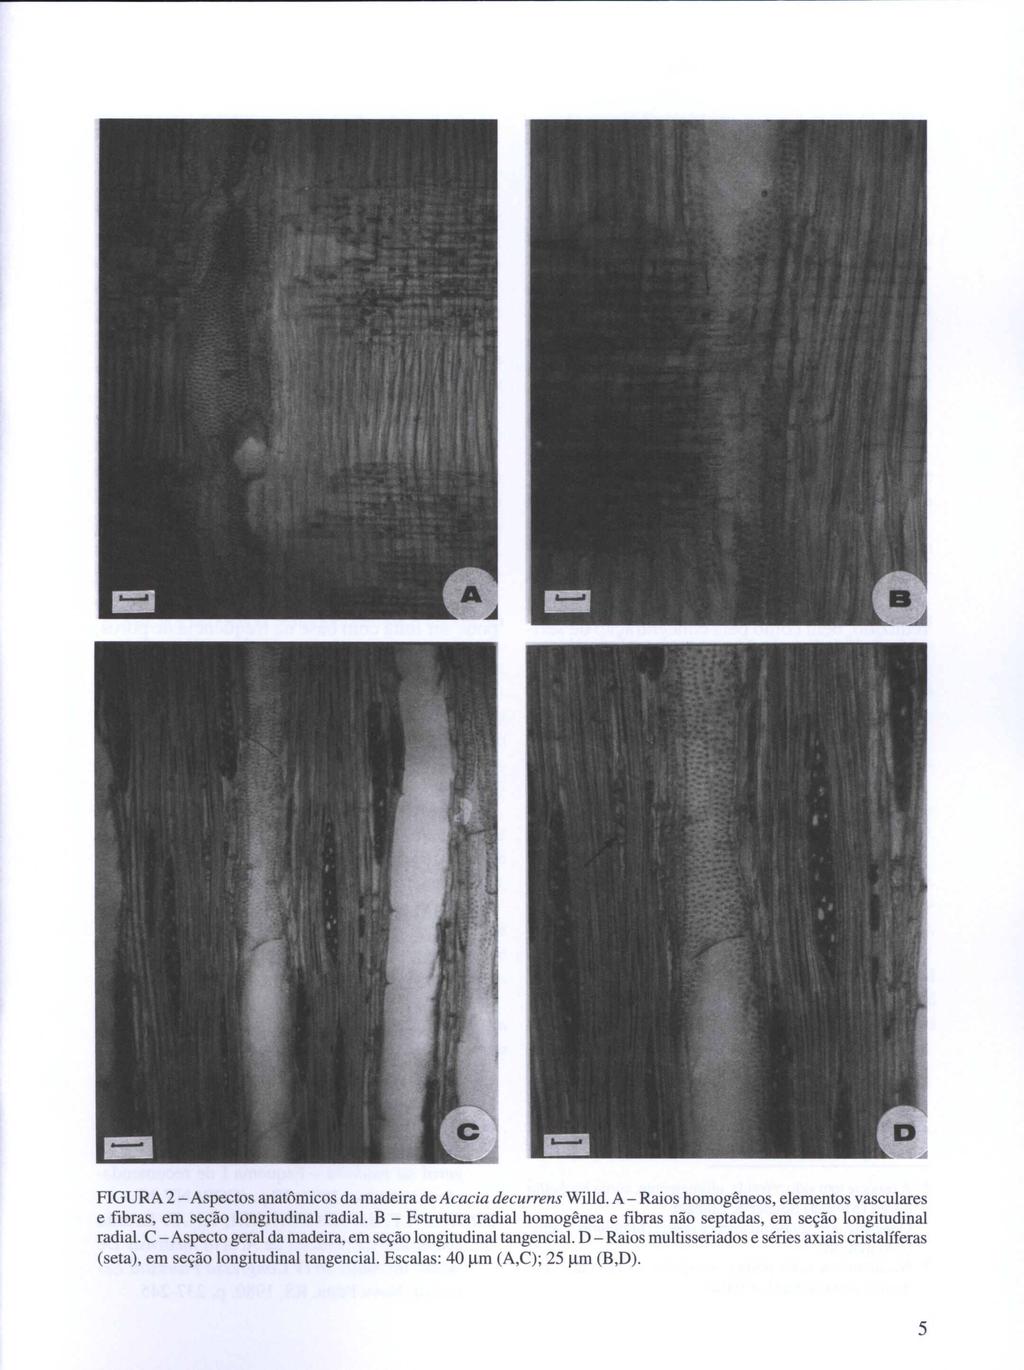 FIGURA 2 - Aspectos anatômicos da madeira de Acacia decurrens Willd. A - Raios homogêneos, elementos vasculares e fibras, em seção longitudinal radial.